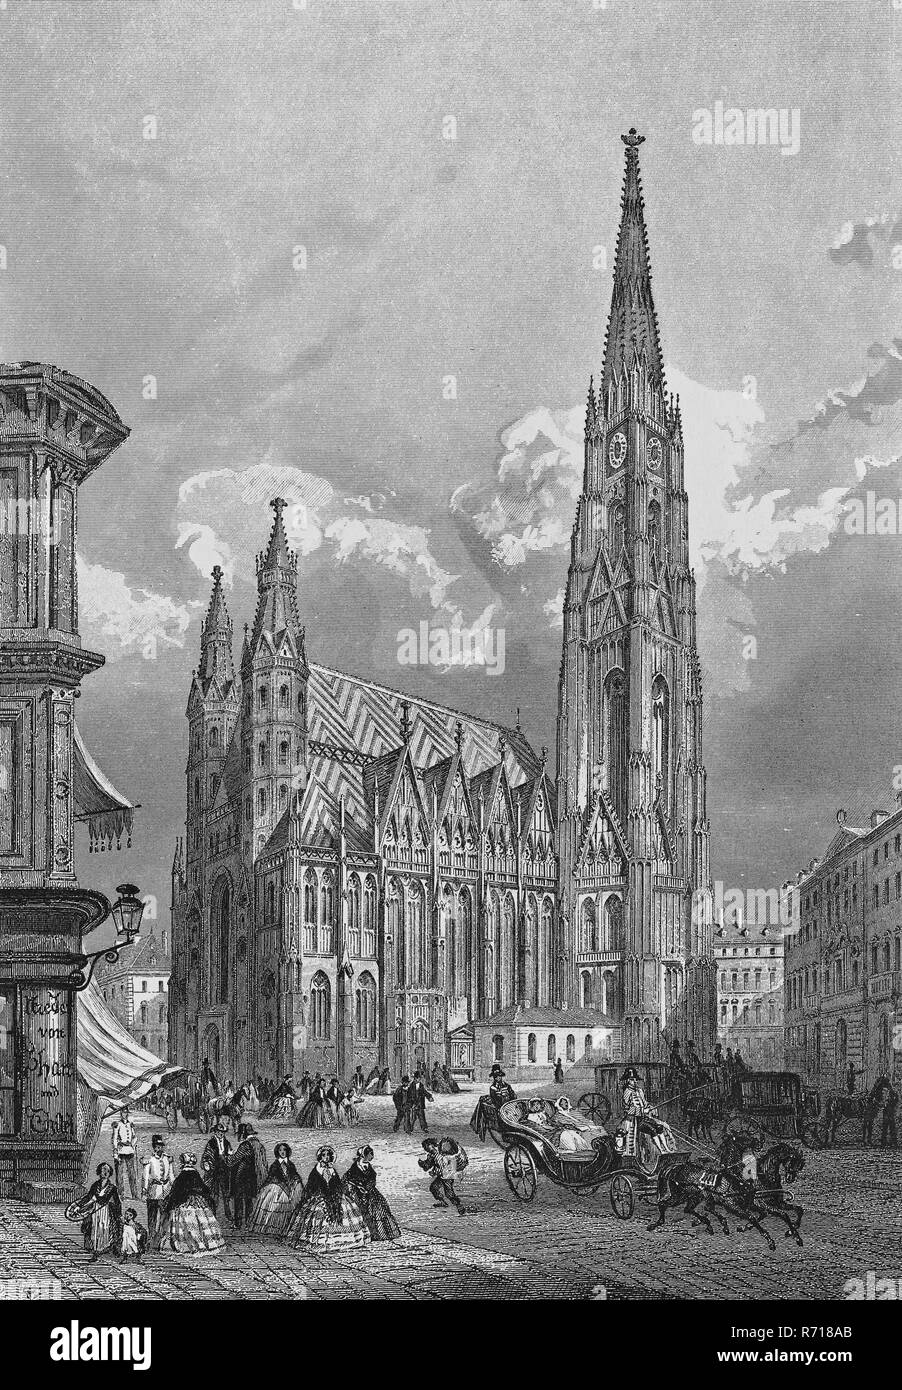 Vue sur la ville historique, gravure sur acier, la cathédrale Saint-Étienne autour de 1830, Vienne, Autriche Banque D'Images